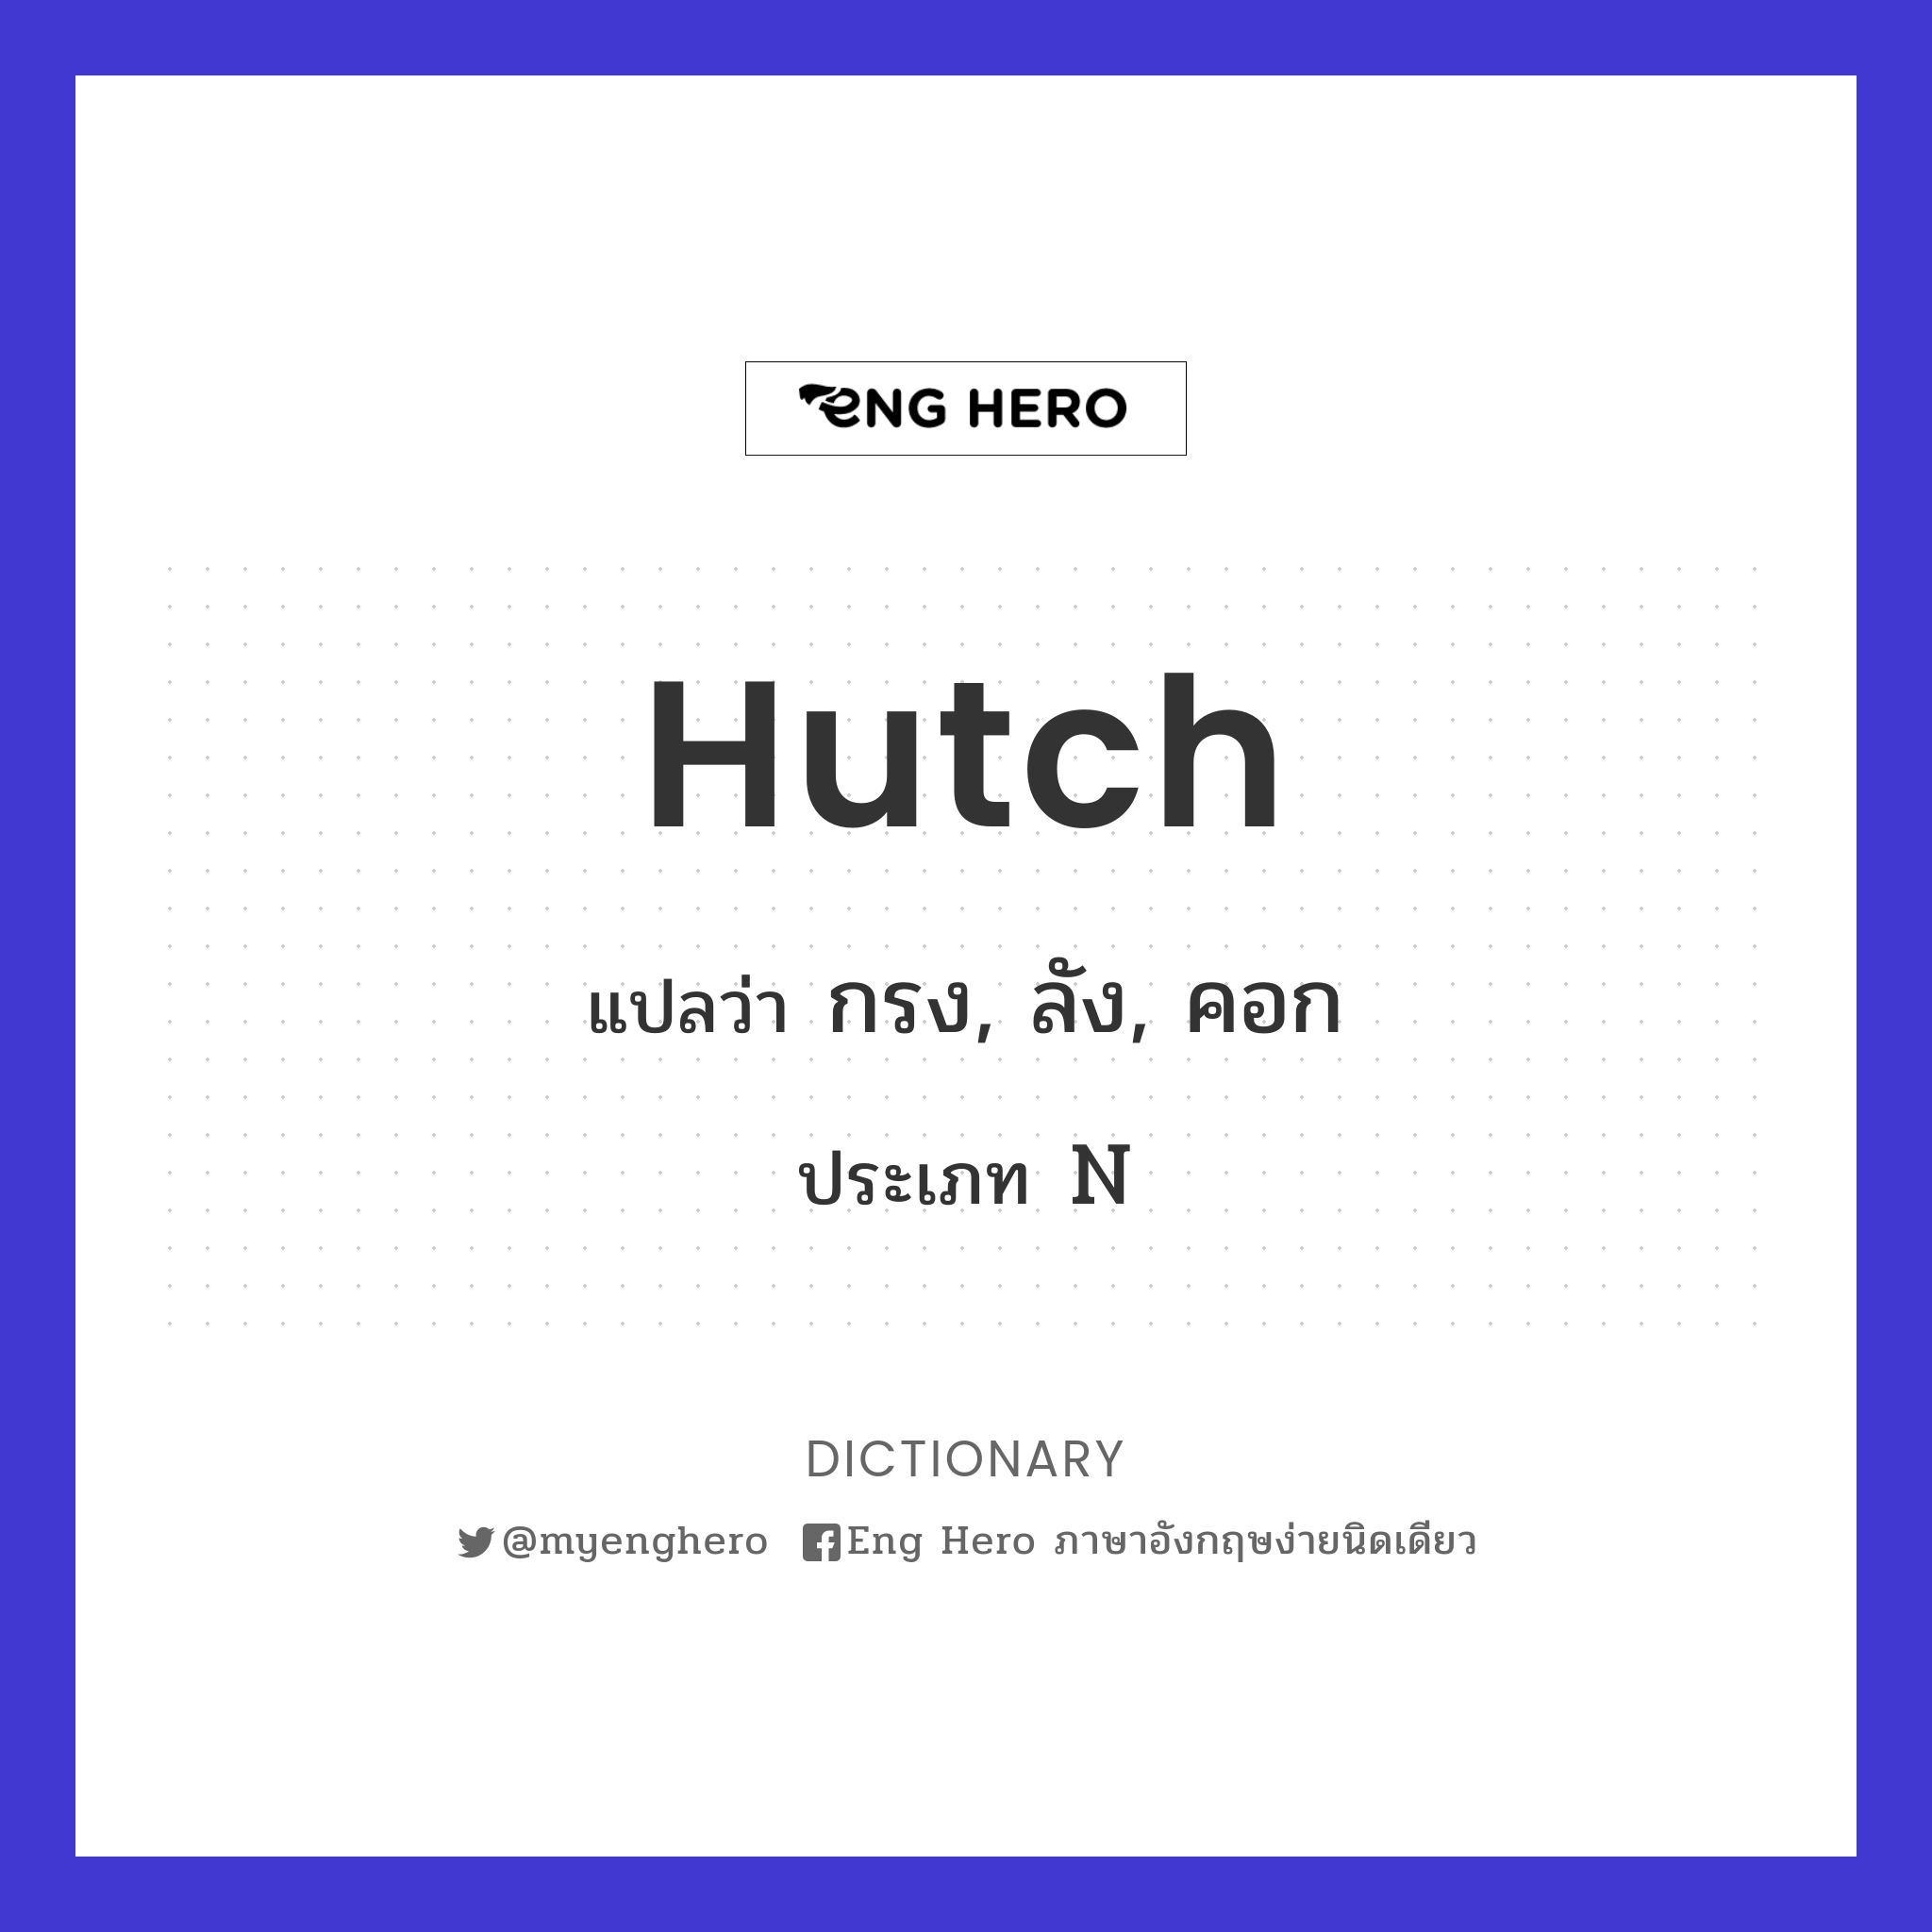 hutch